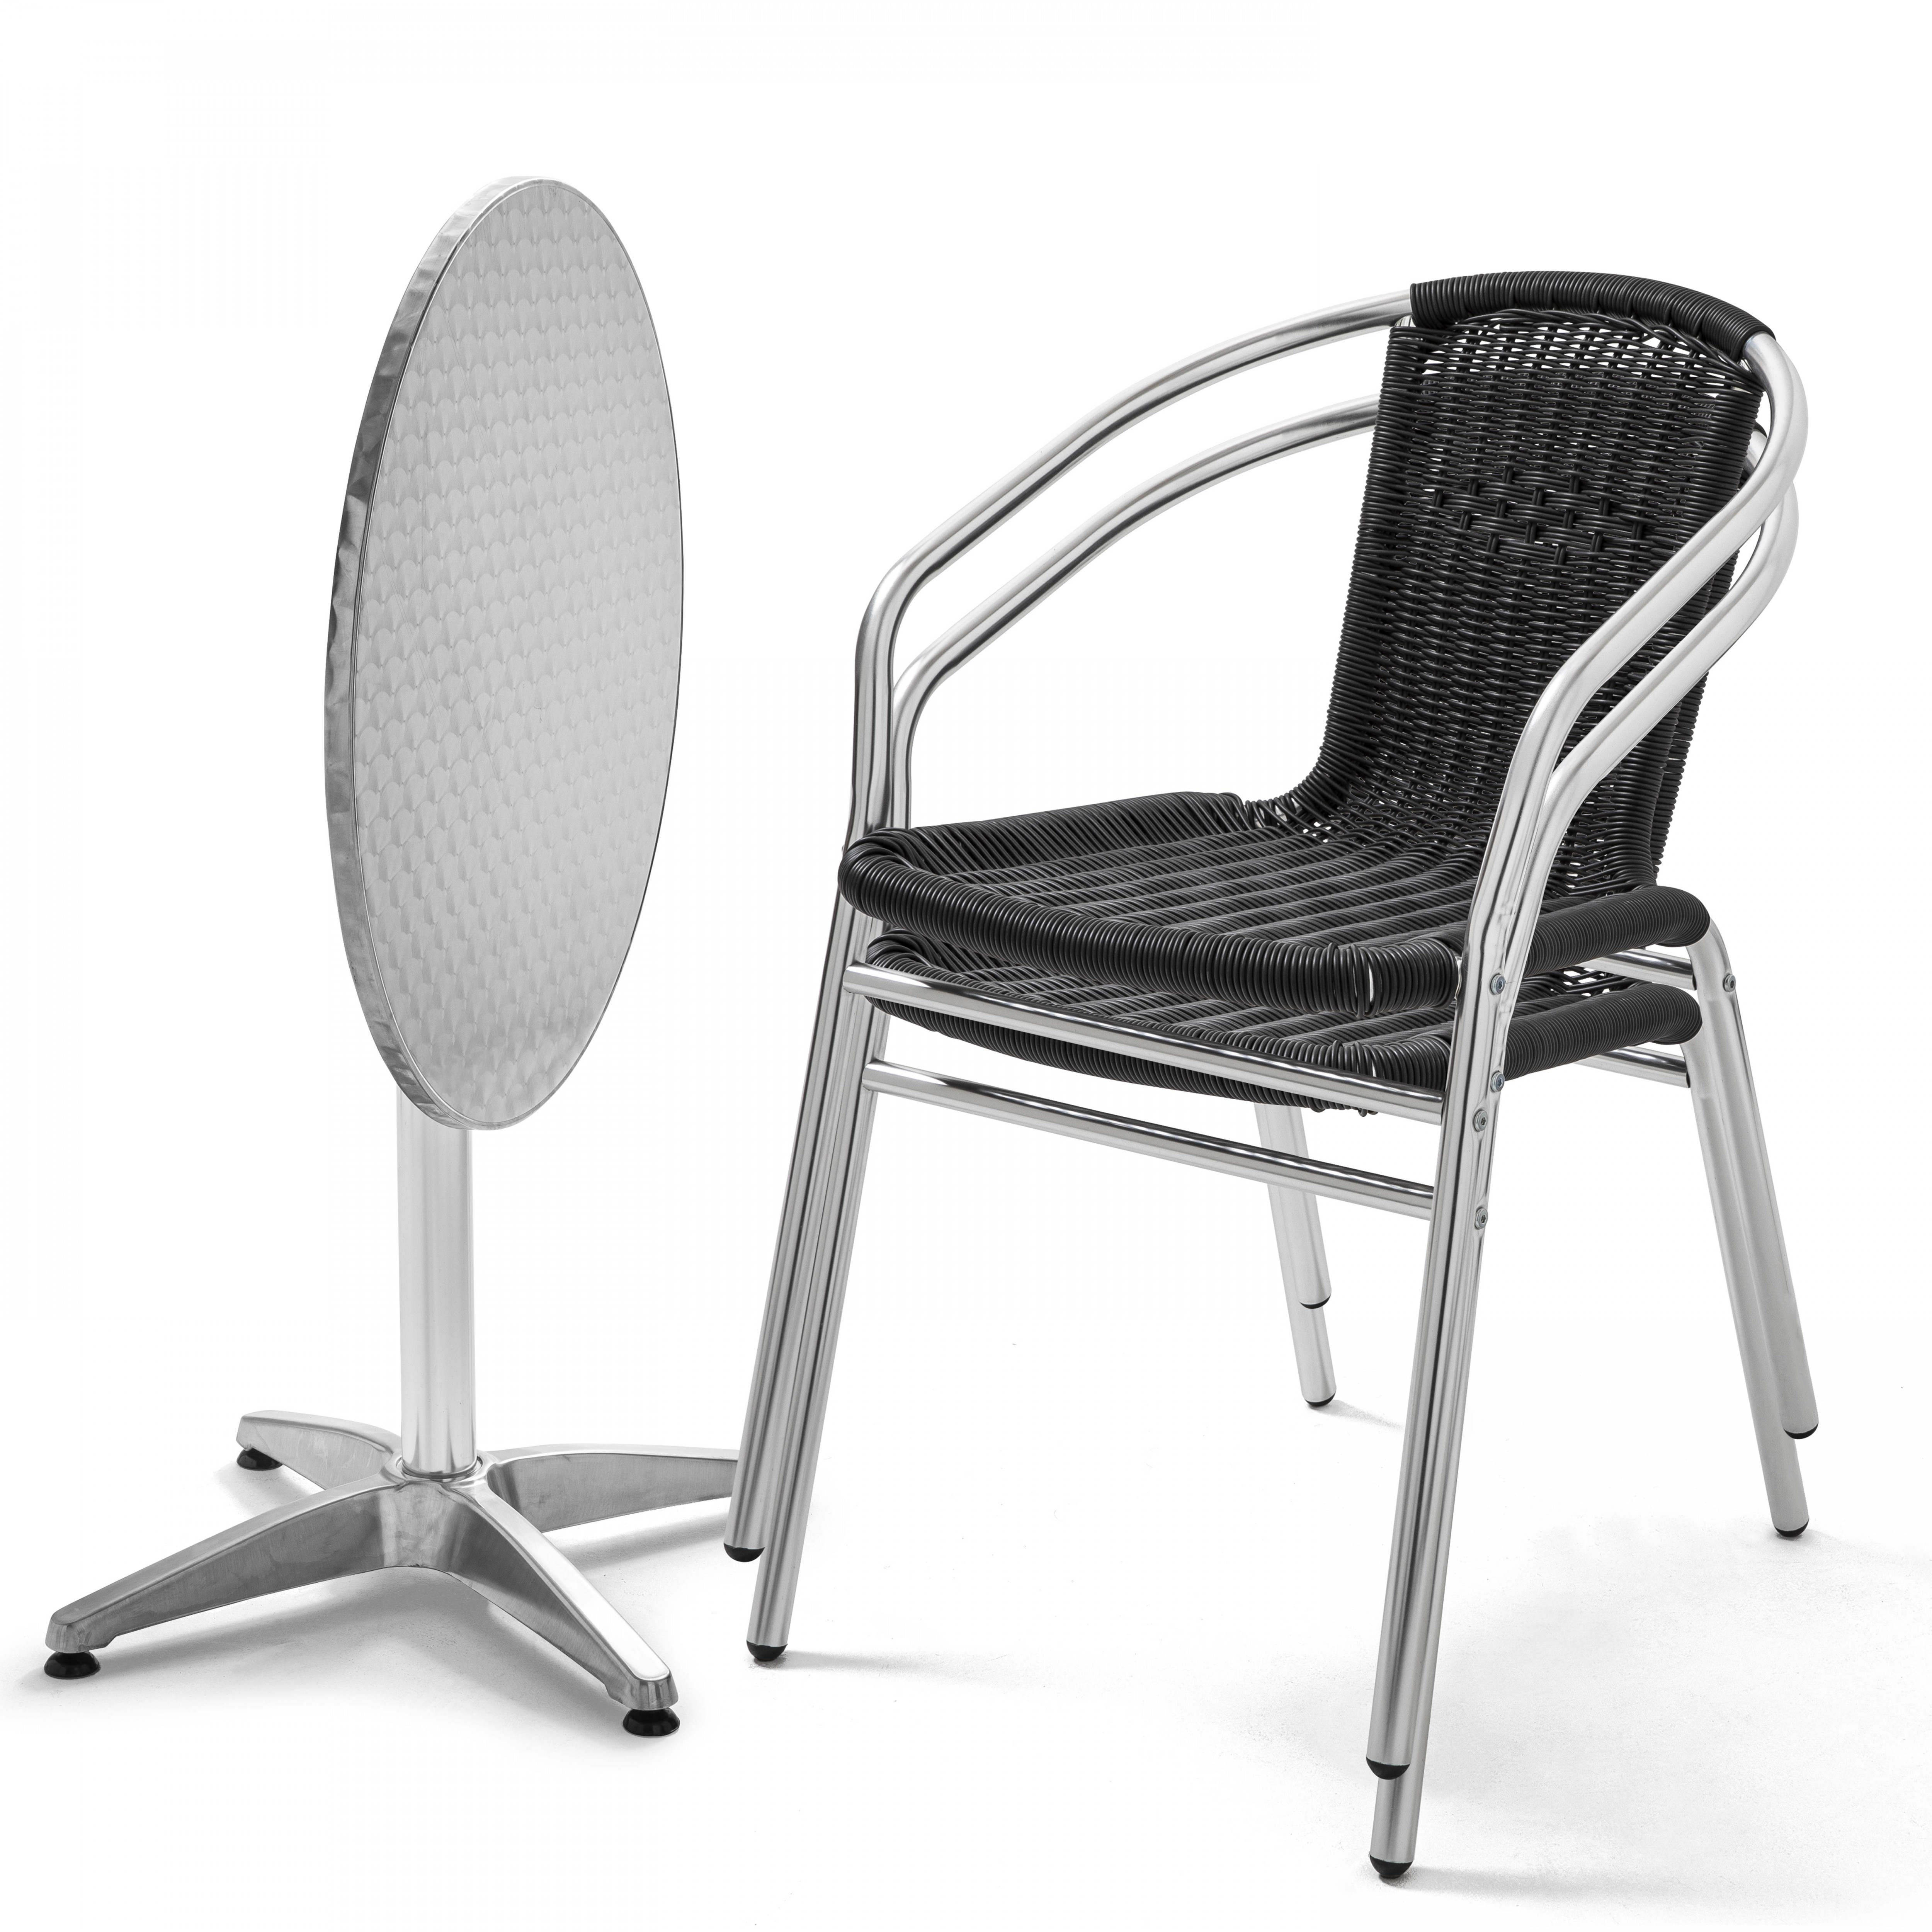 Table de jardin ronde en aluminium et 2 chaises avec accoudoirs